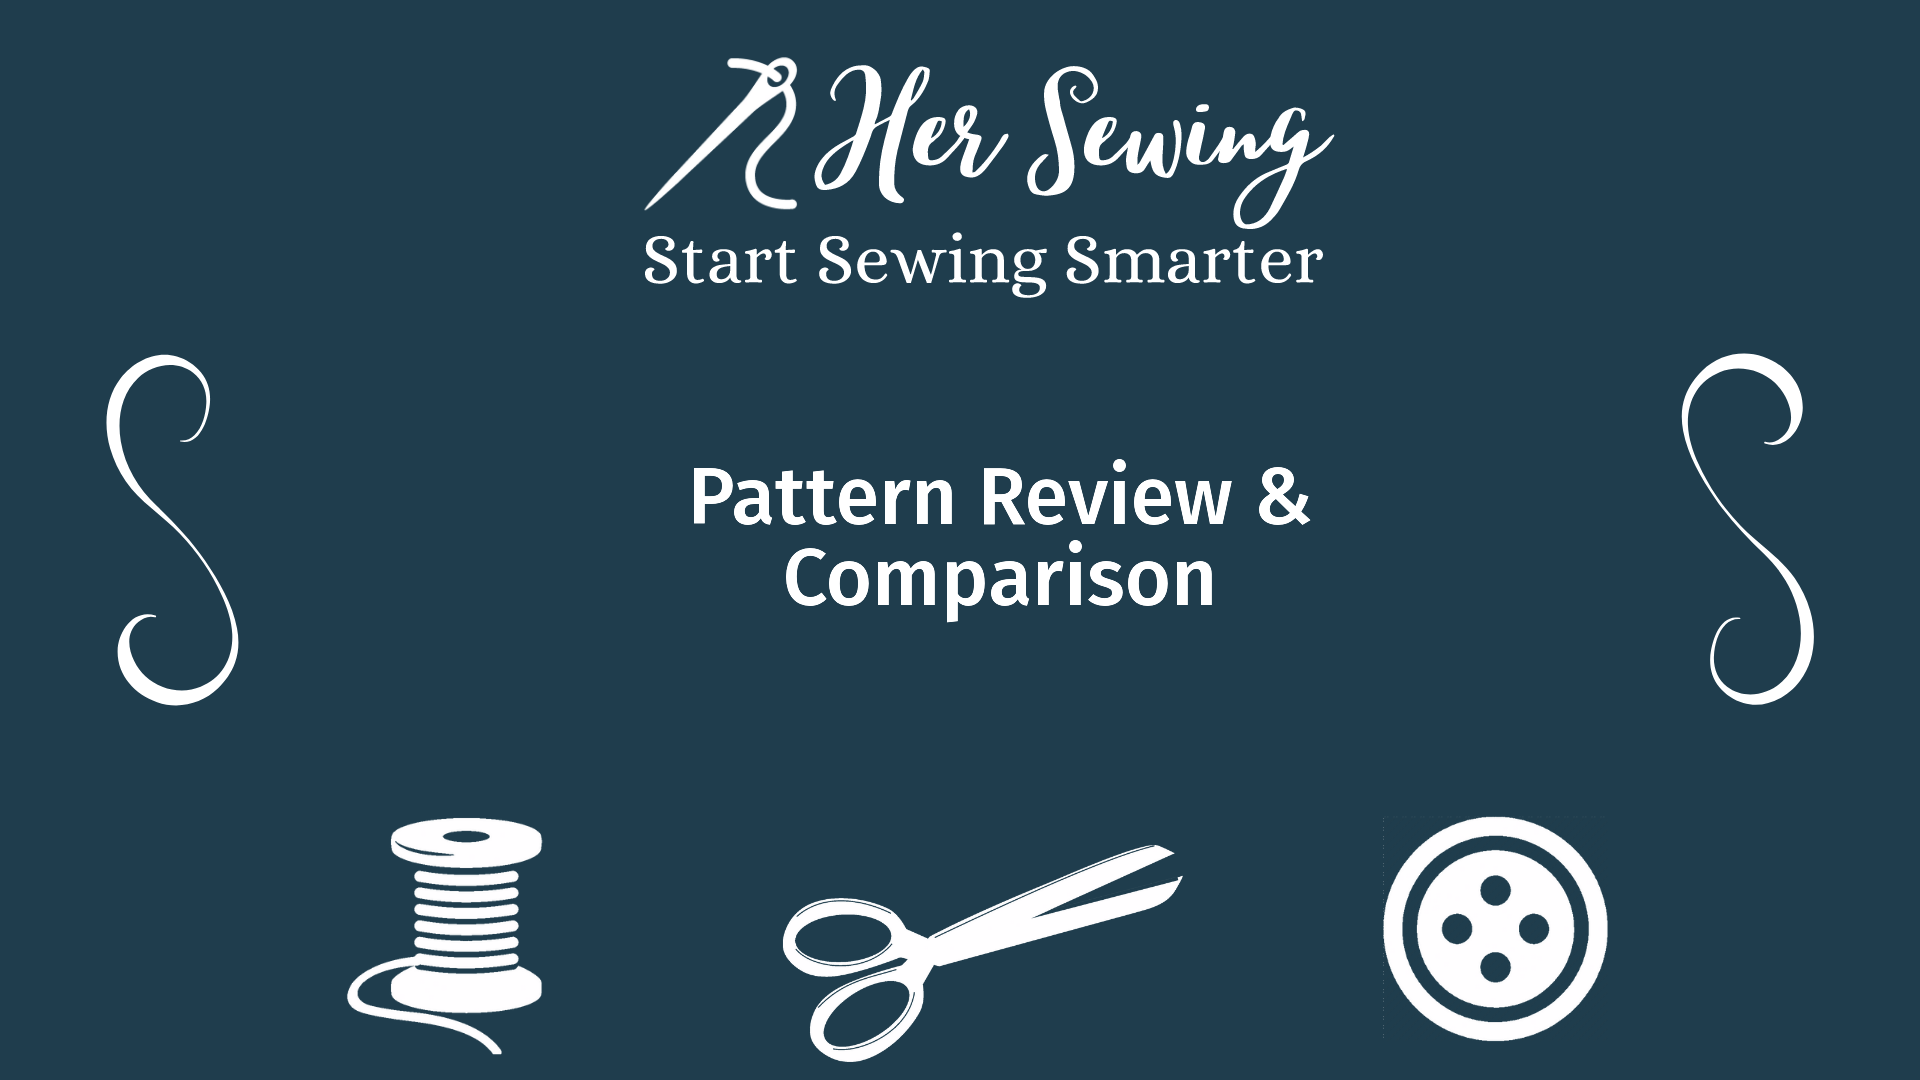 Pattern Review & Comparison